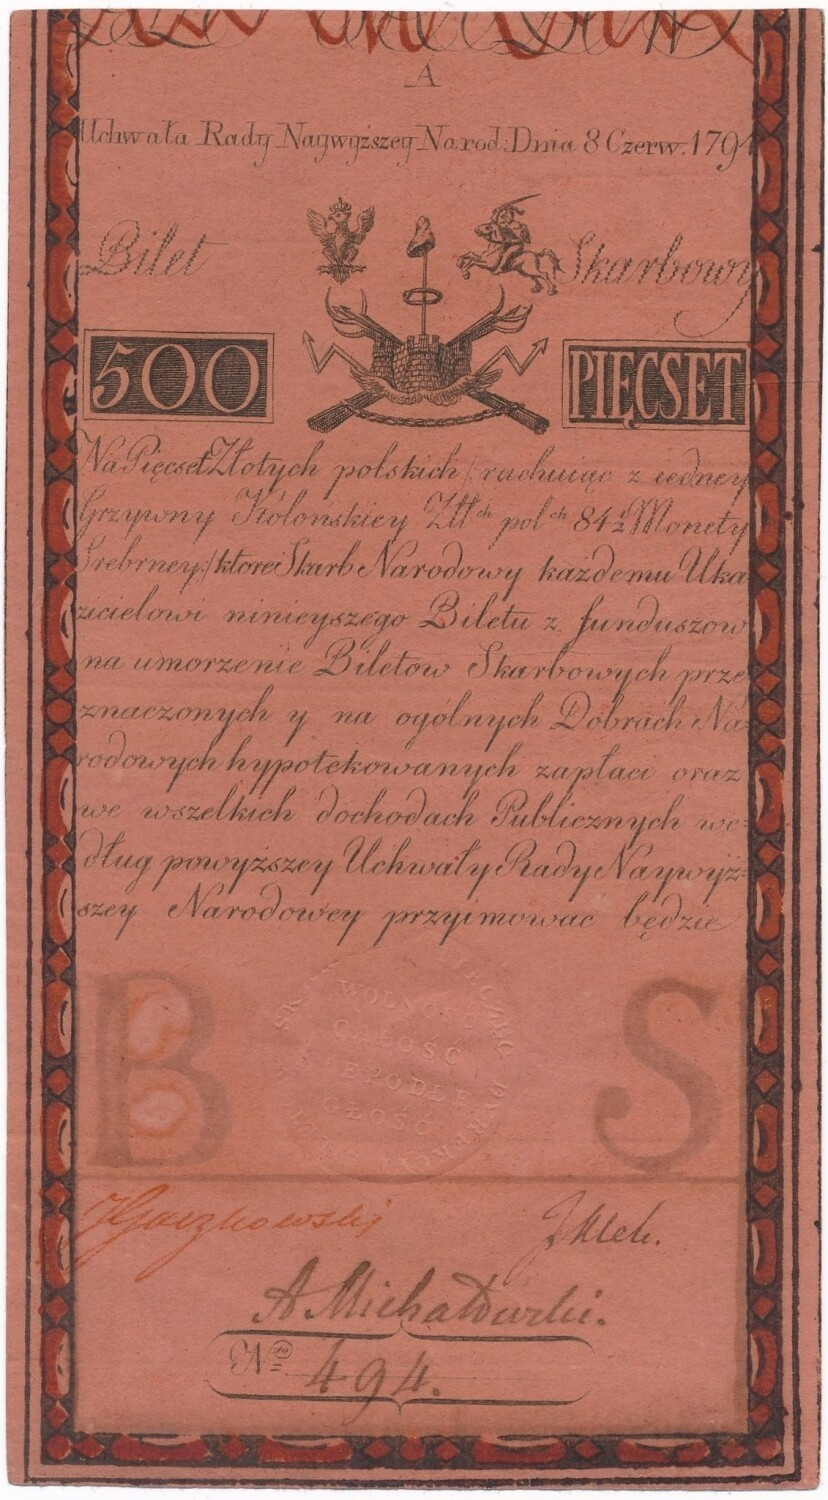 Wyjątkowy banknot trafi do Muzeum Papiernictwa w Dusznikach-Zdroju. To 500 zł z czasów insurekcji kościuszkowskiej 